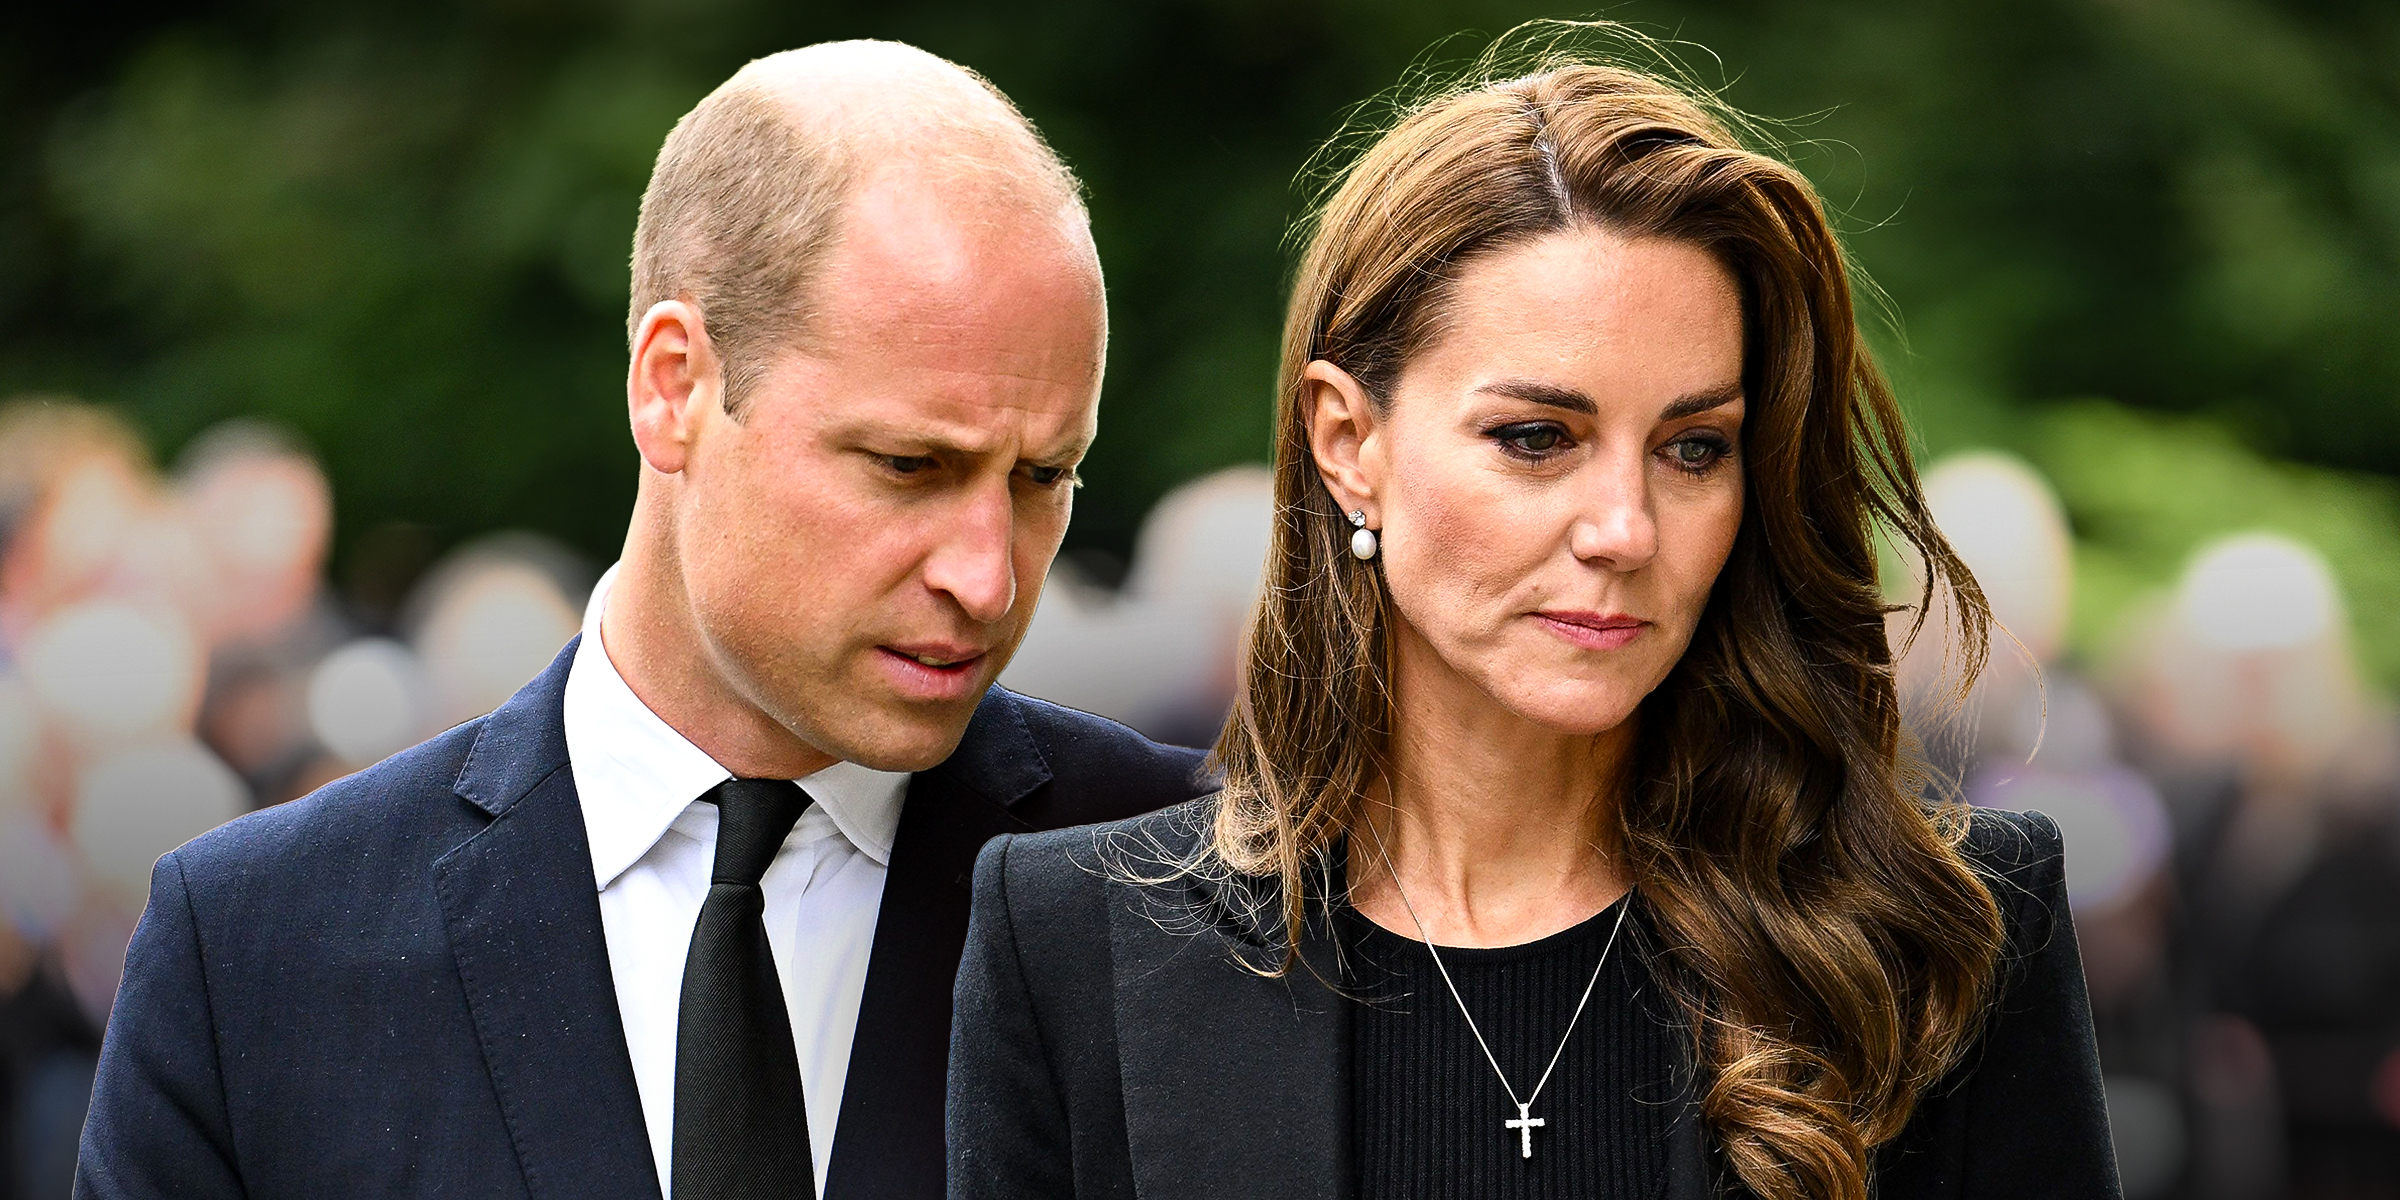 Le prince William et la princesse Catherine | Source : Getty Images